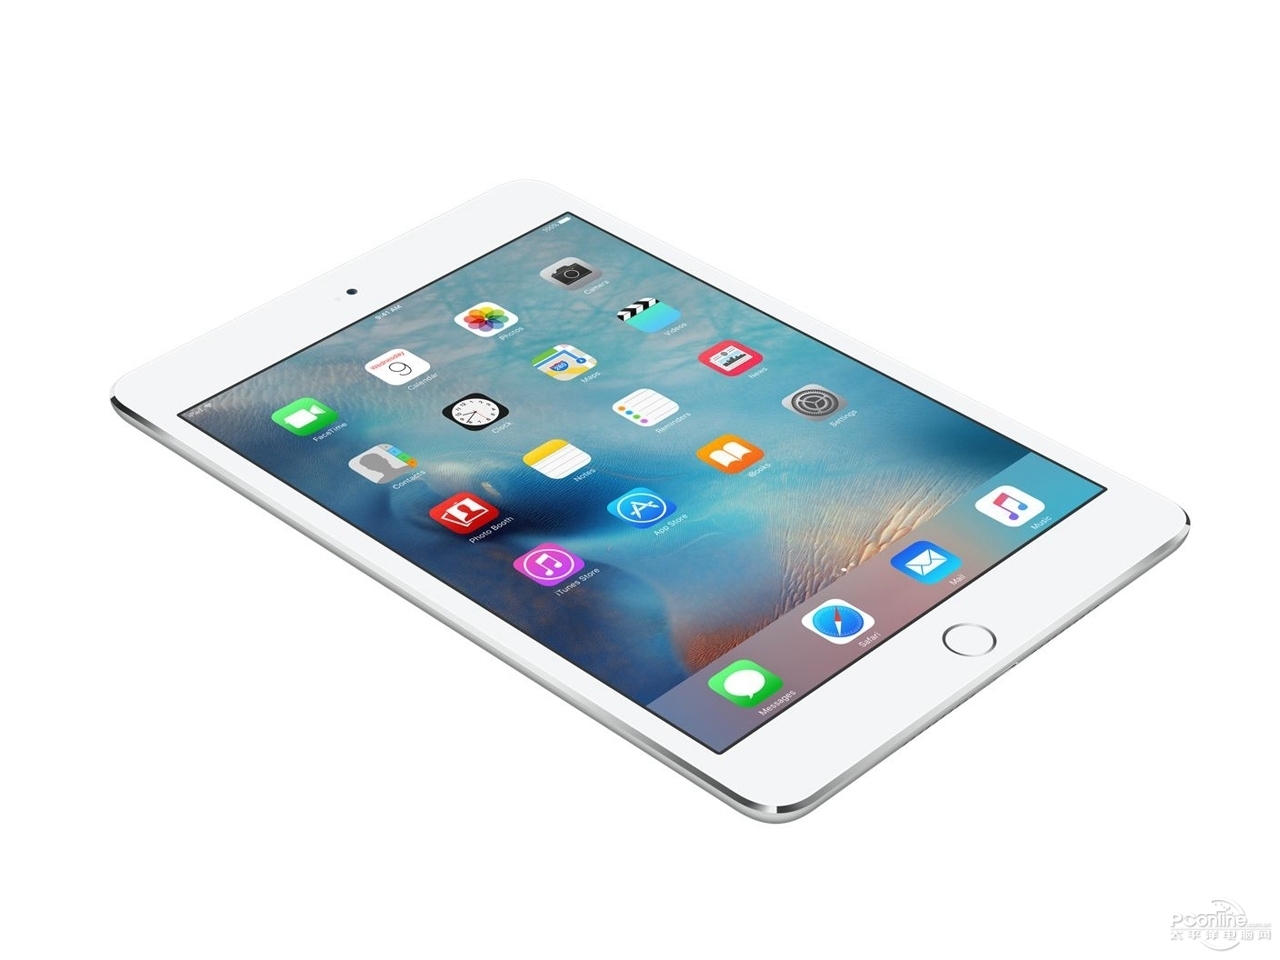 【图】苹果iPad Mini 4(128GB\/Cellular)图片( Apple iPad Mini 4(128GB\/Cellular) 图片)__标准外观图_第2页_太平洋产品报价